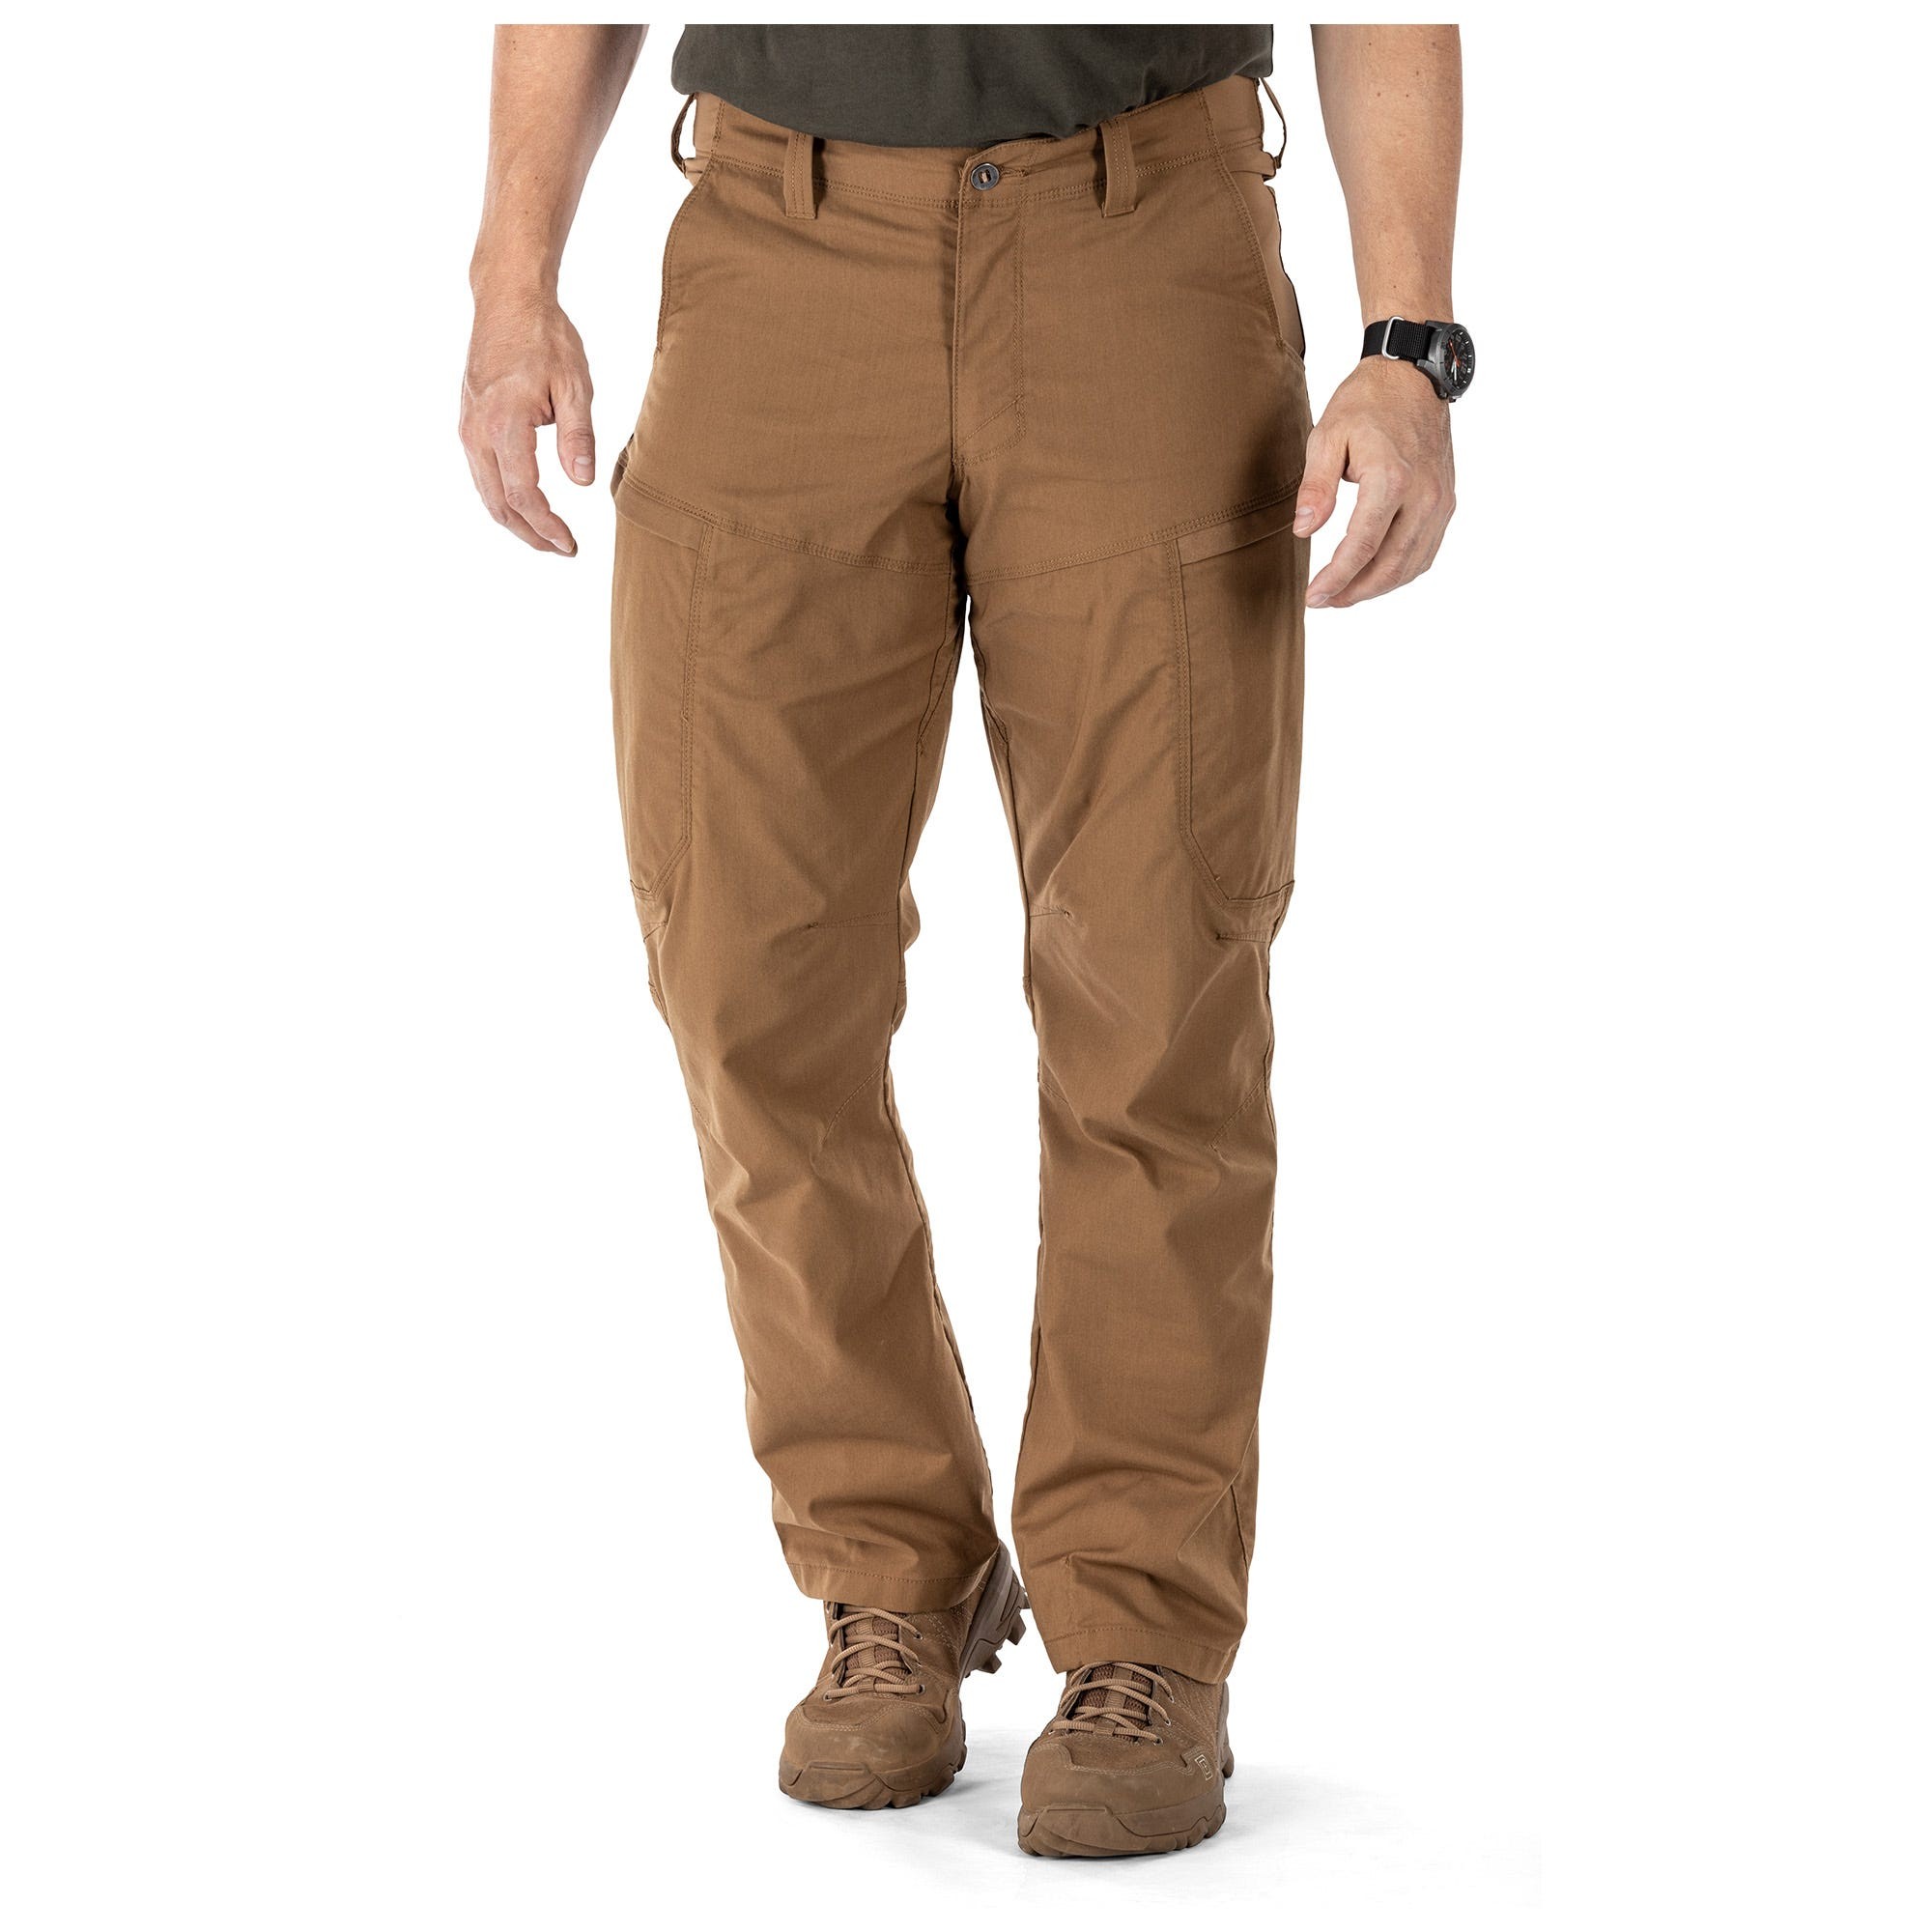 5.11 Tactical Men's Apex Pant, Size 34/32 (Cargo Pant)